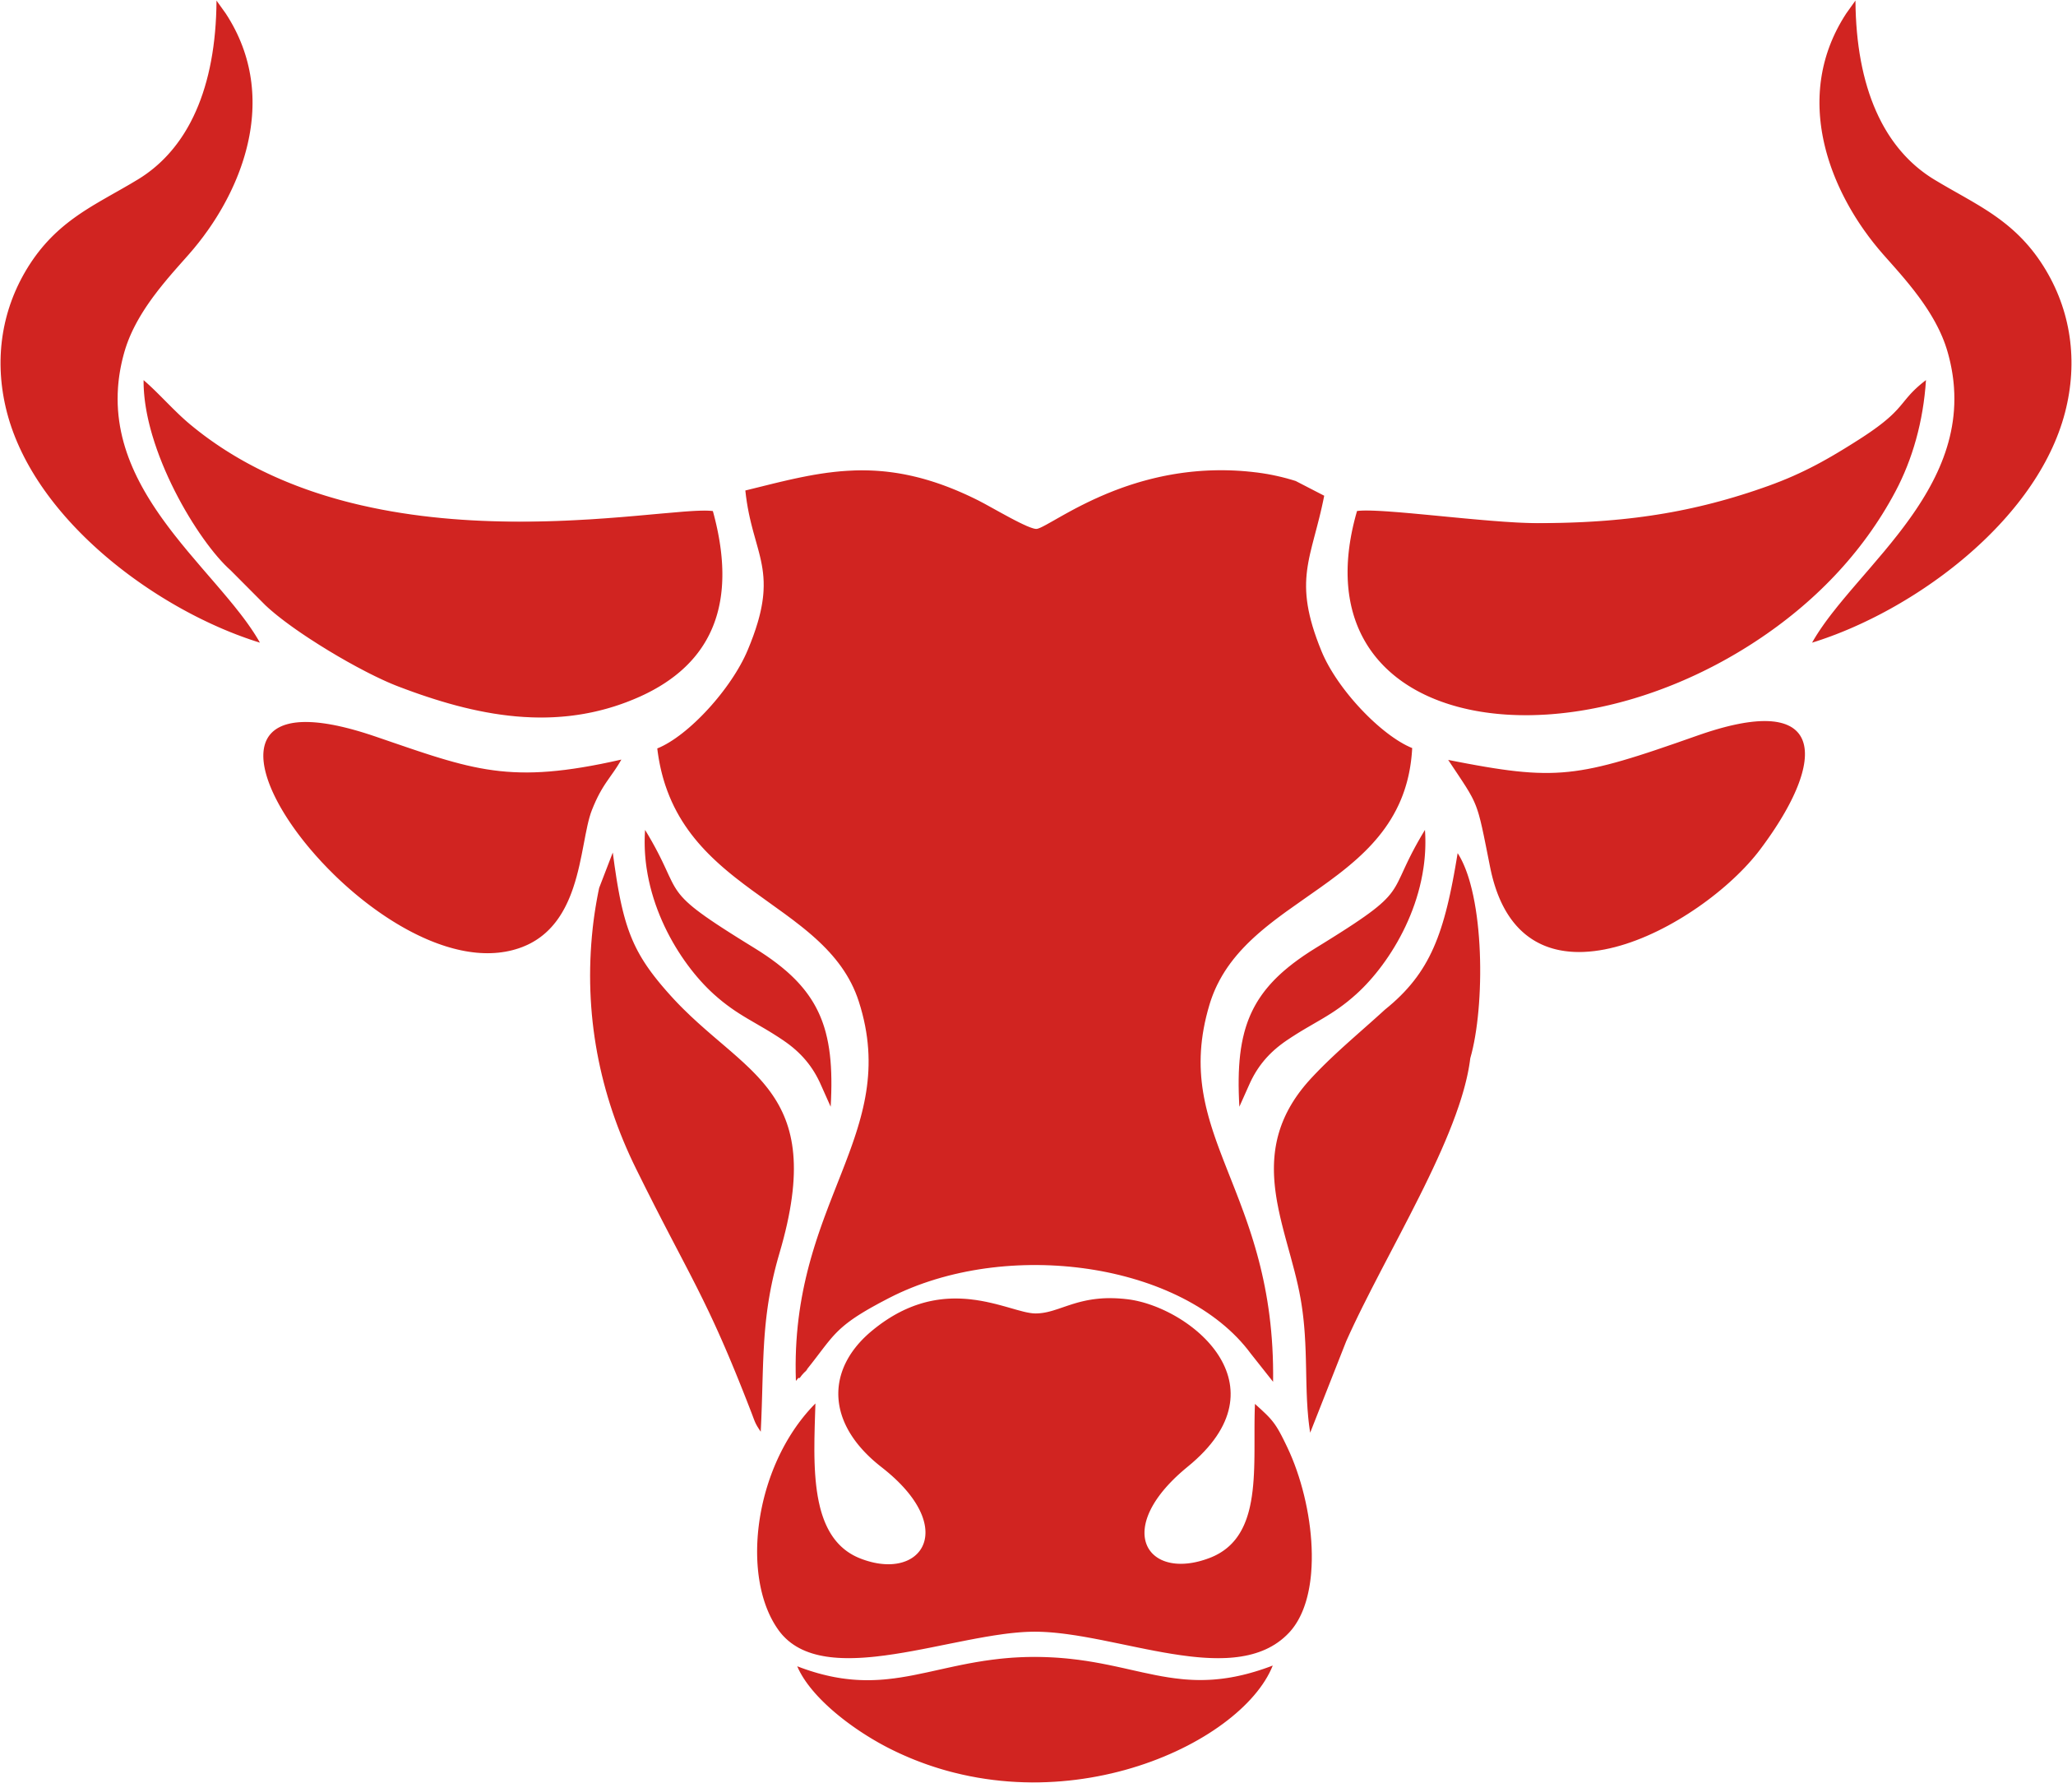 The бык черемушки. Мясной ресторан the бык. The бык логотип ресторана. The бык ресторан лого. The бык Пушкинская.